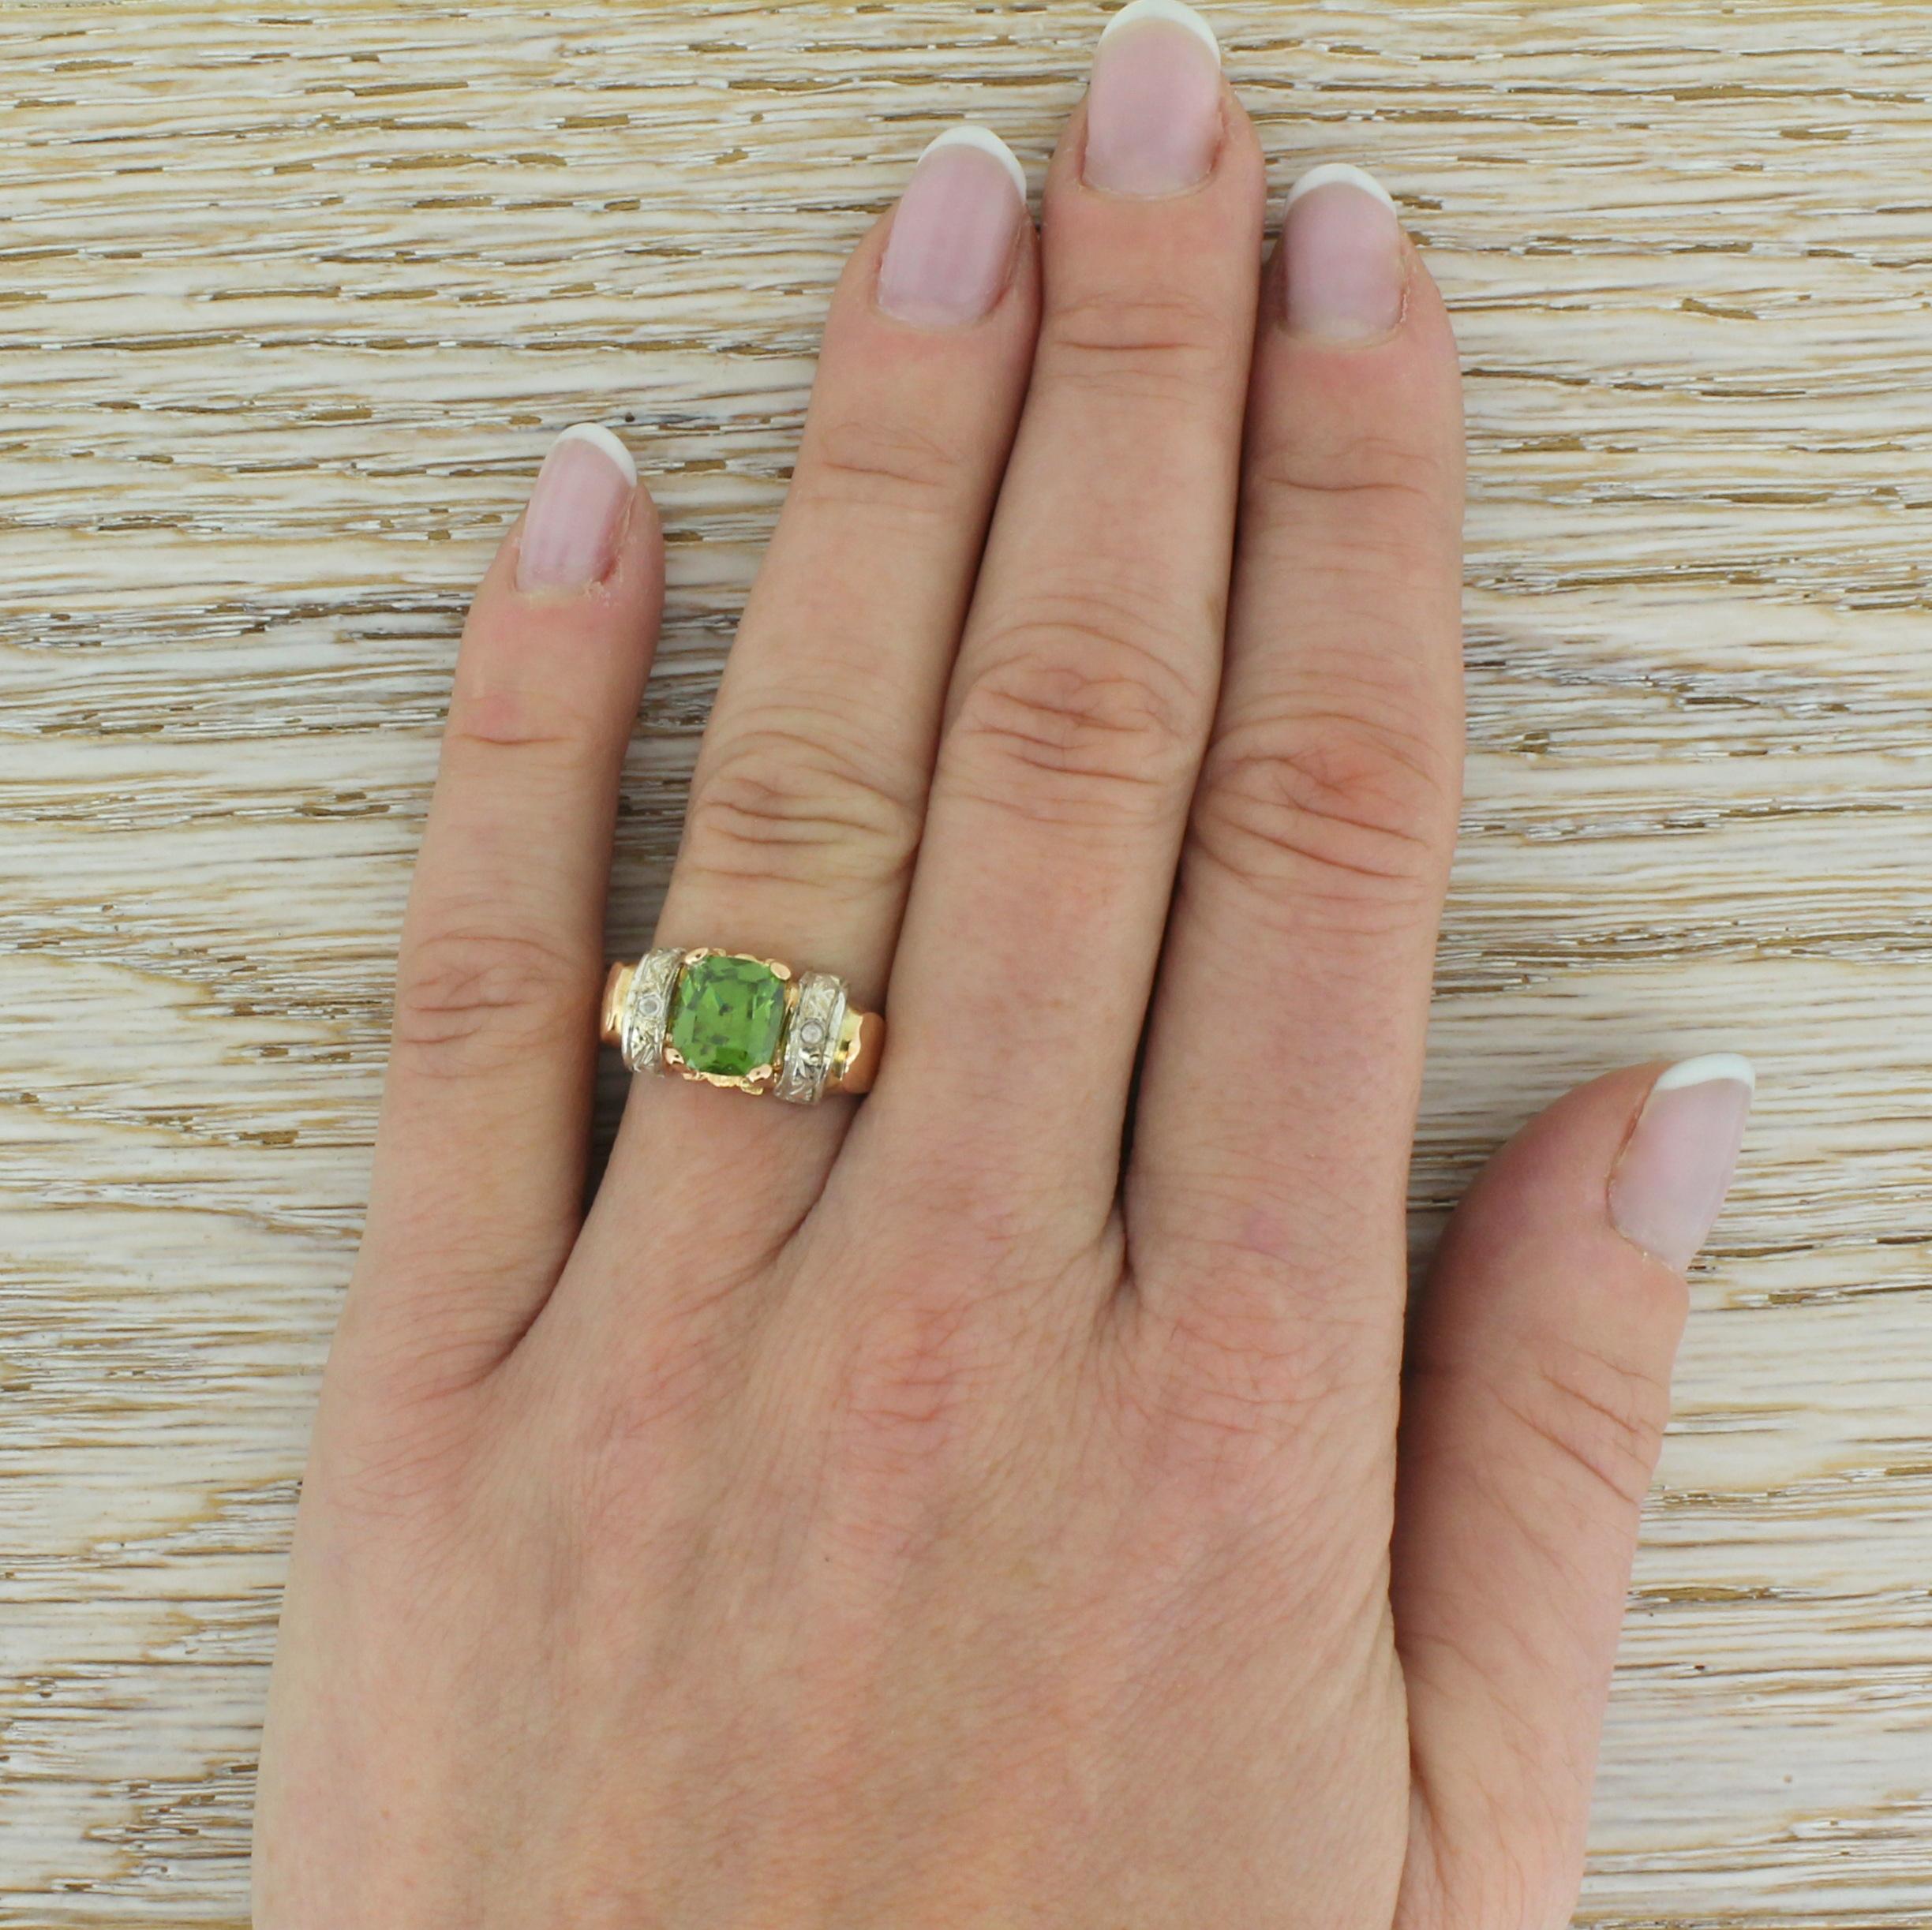 Women's Art Nouveau 1.97 Carat Demantoid Garnet Solitaire Ring For Sale